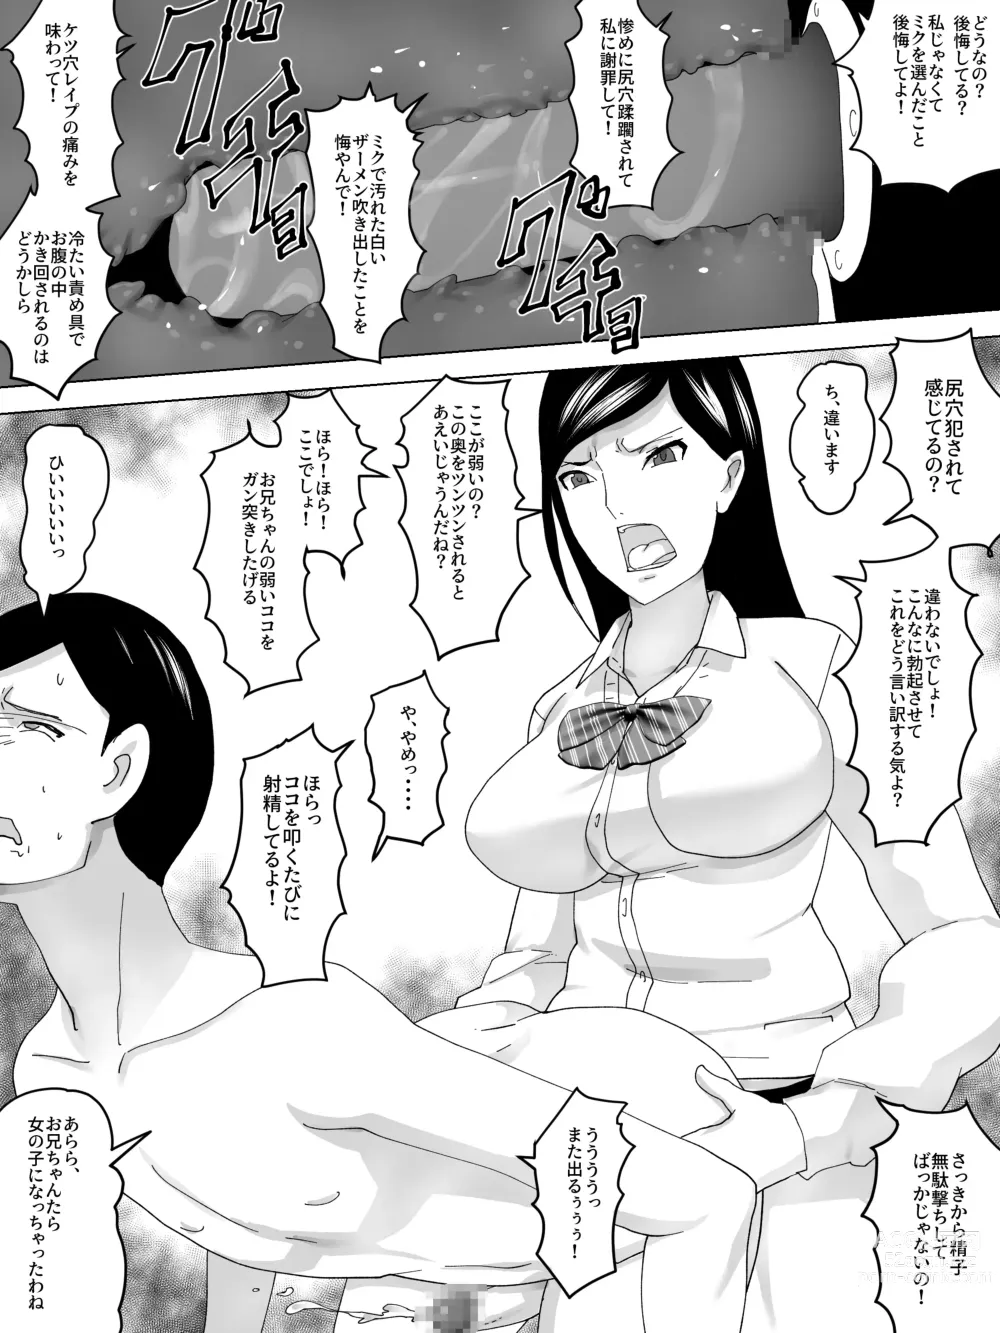 Page 16 of doujinshi Imouto No Benki ni Naru